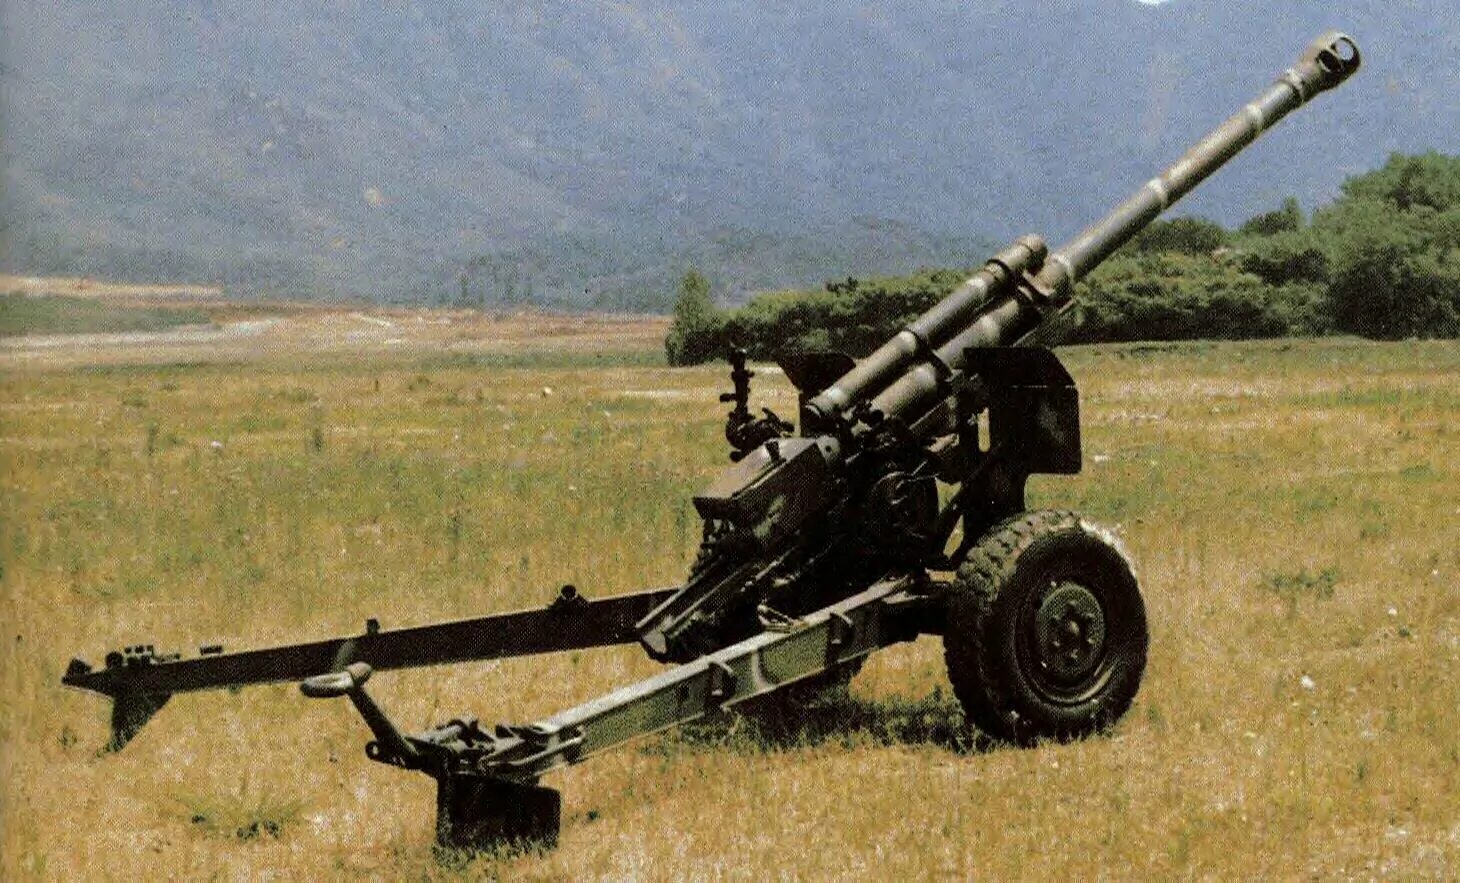 LG-1 Howitzer 105mm. 105-Мм гаубица m101. Kh179 155-мм буксируемая гаубица. 105-Мм гаубица KH-178.